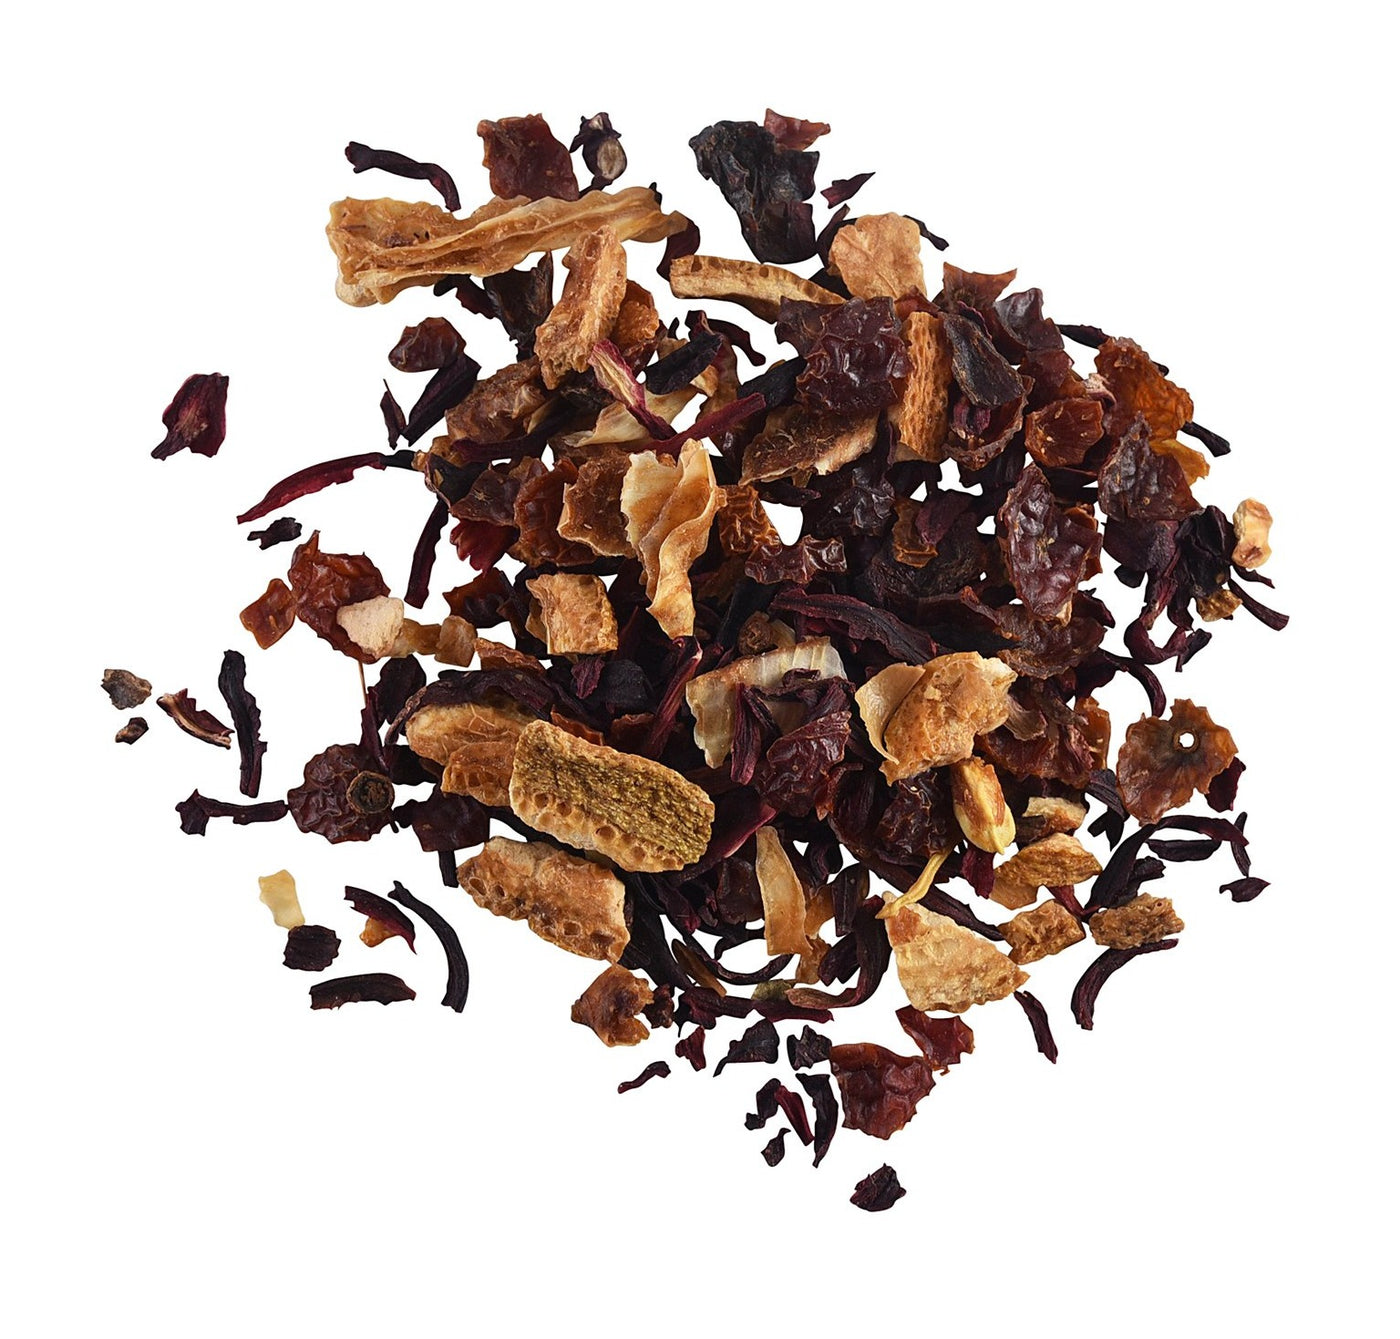 Blood Orange Herbal Tea🍊 - Sullivan Street Tea & Spice Company